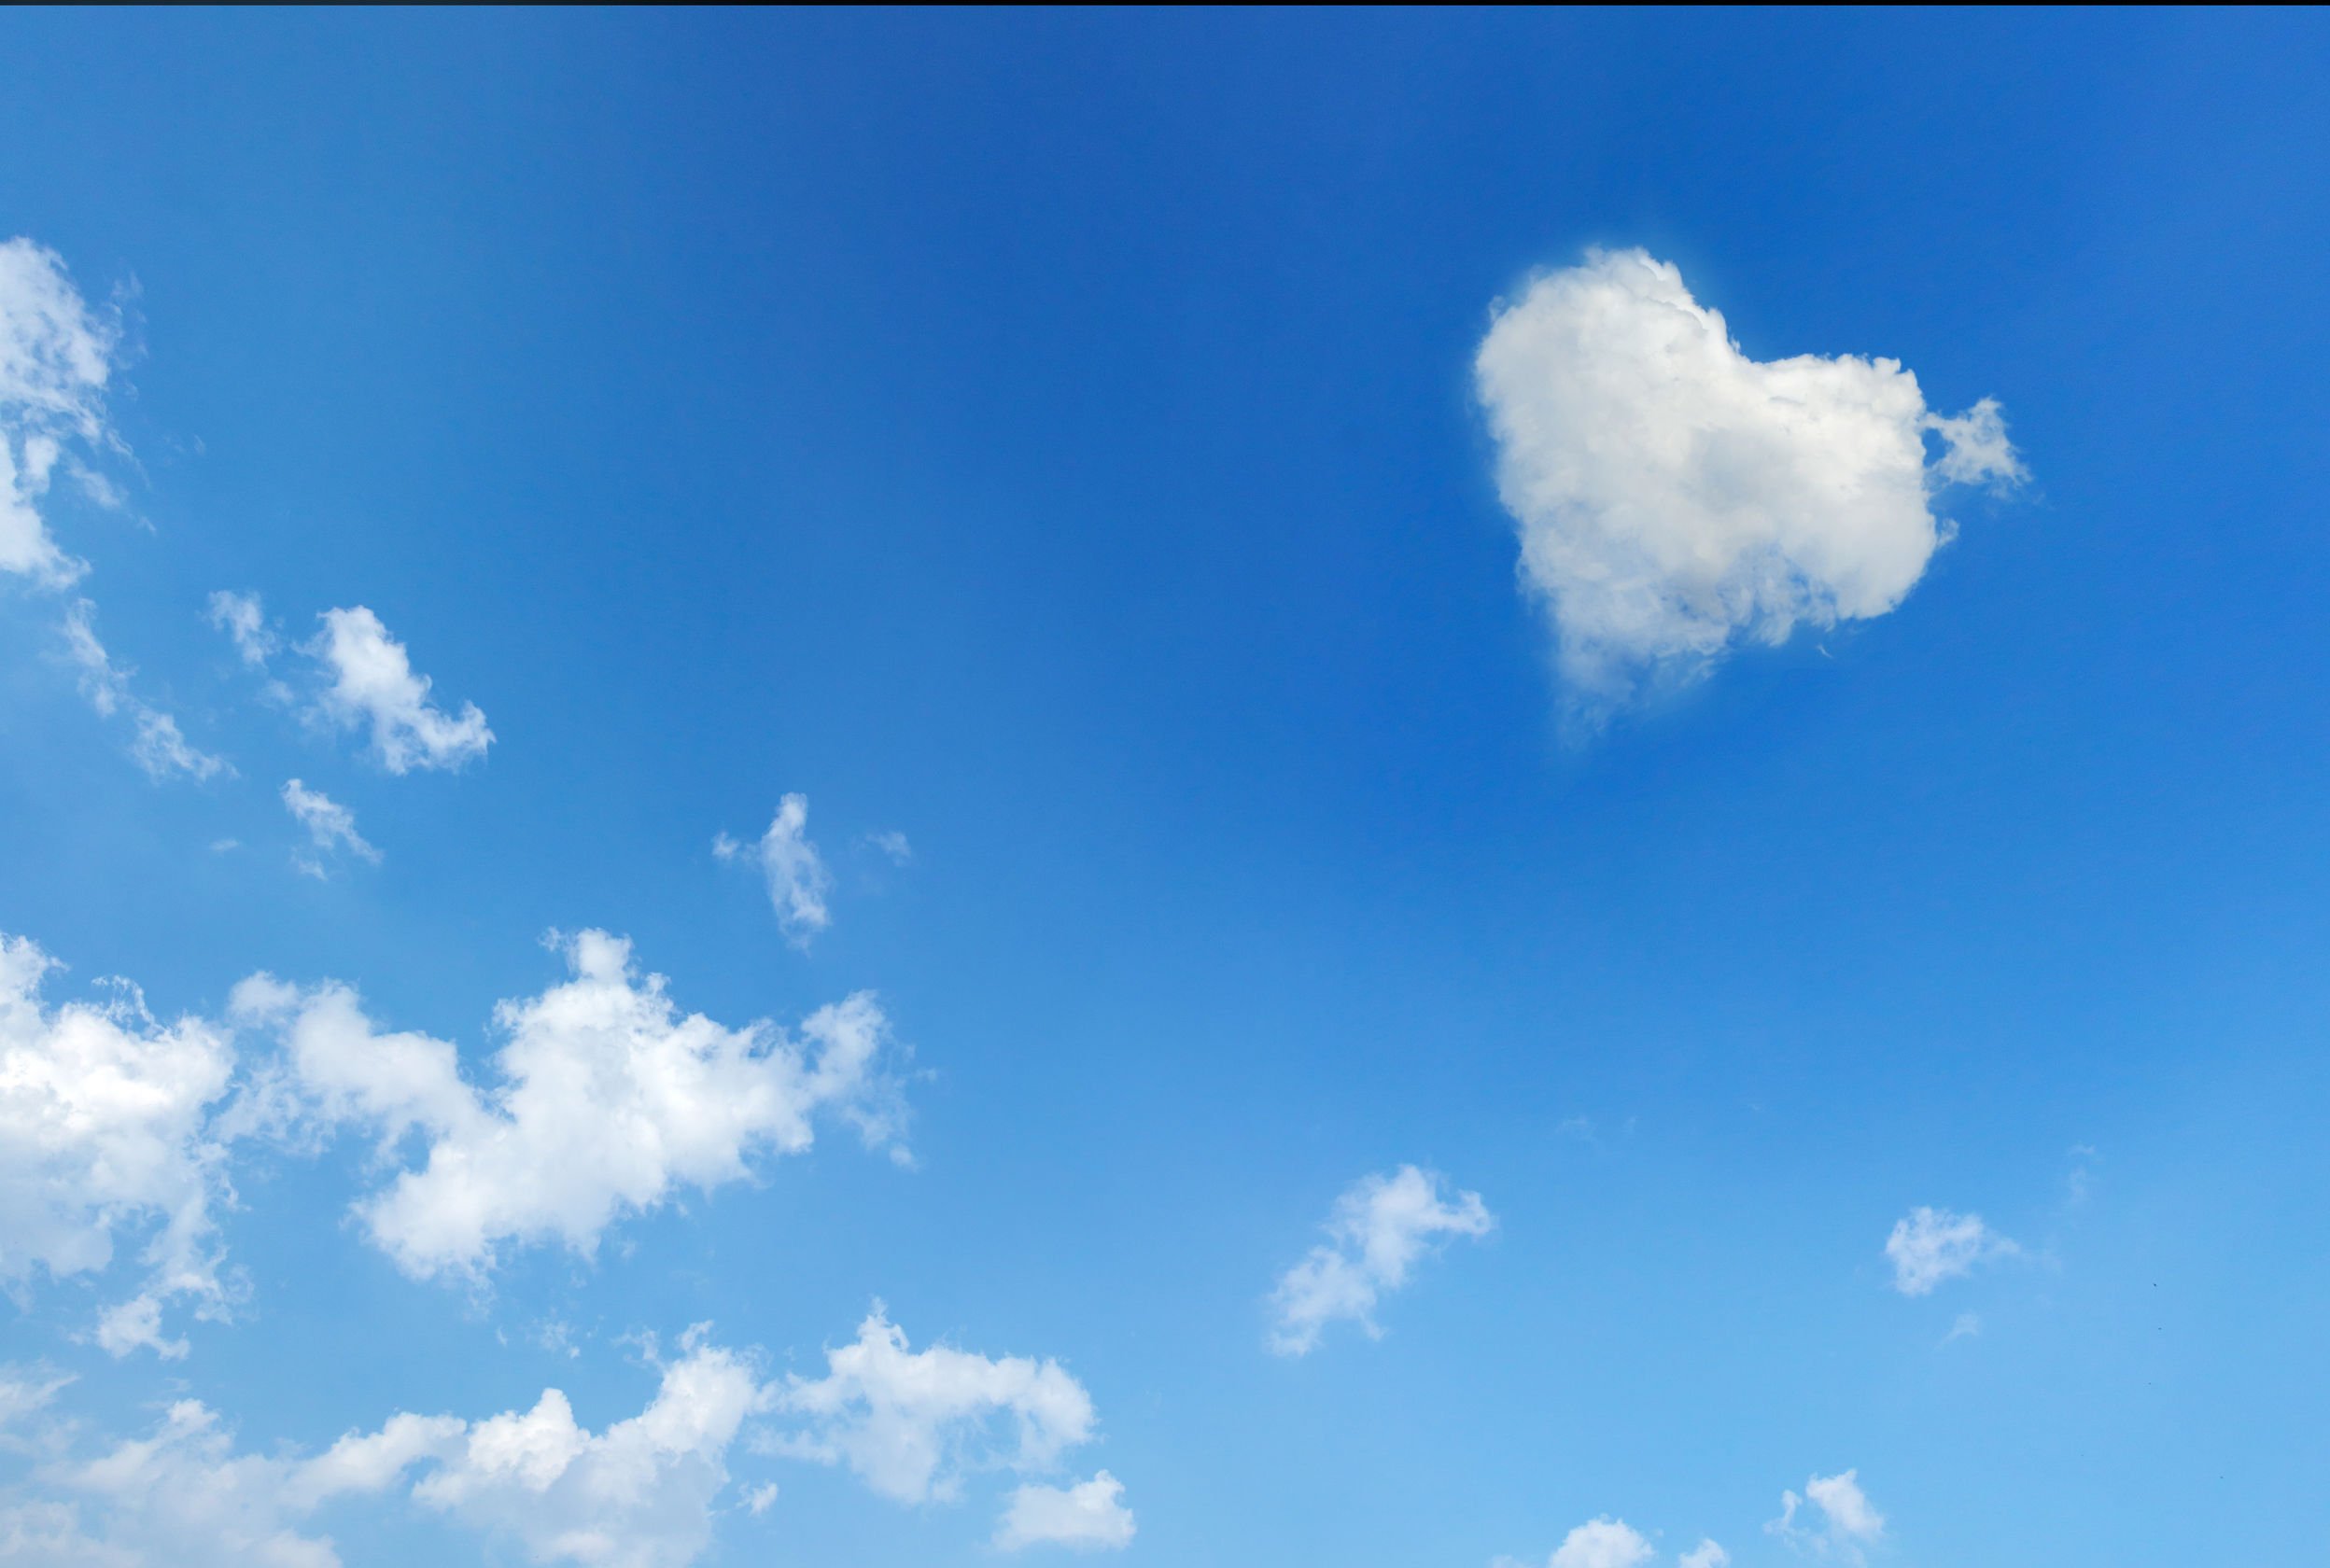 Foto do céu com nuvem em formato de coração